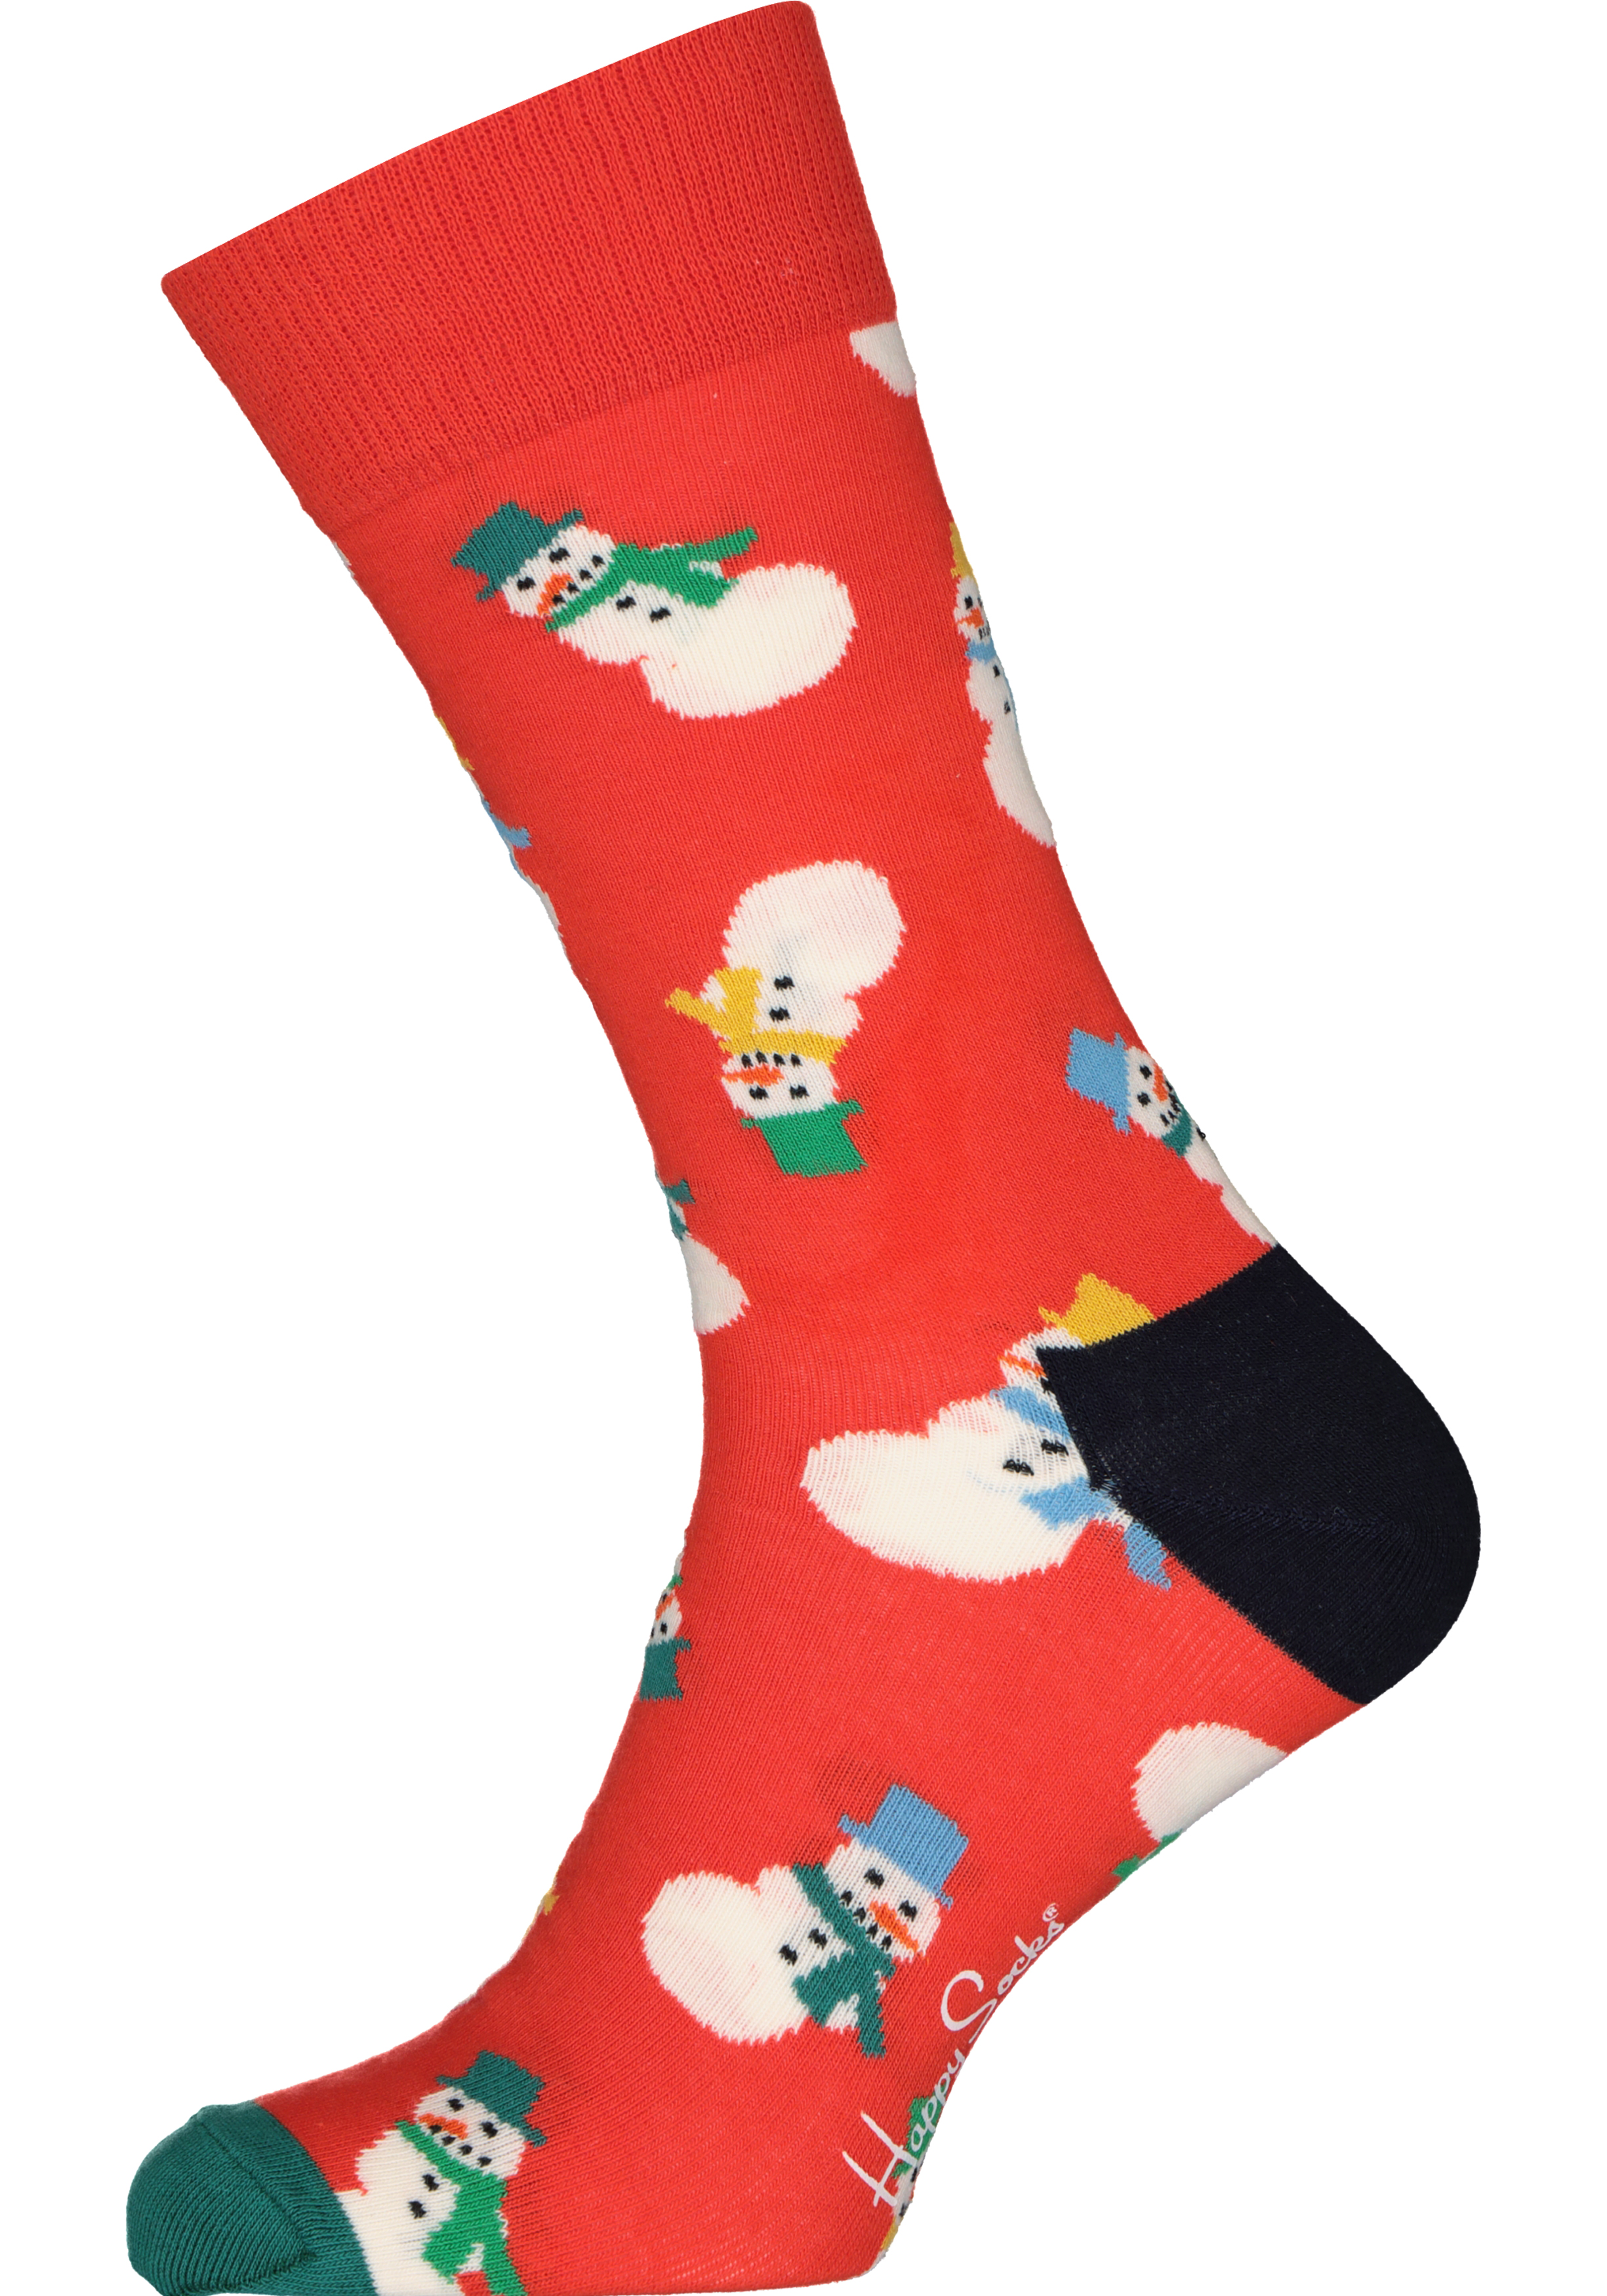 Happy Socks Snowman Sock, unisex sokken, rood met sneeuwpoppen